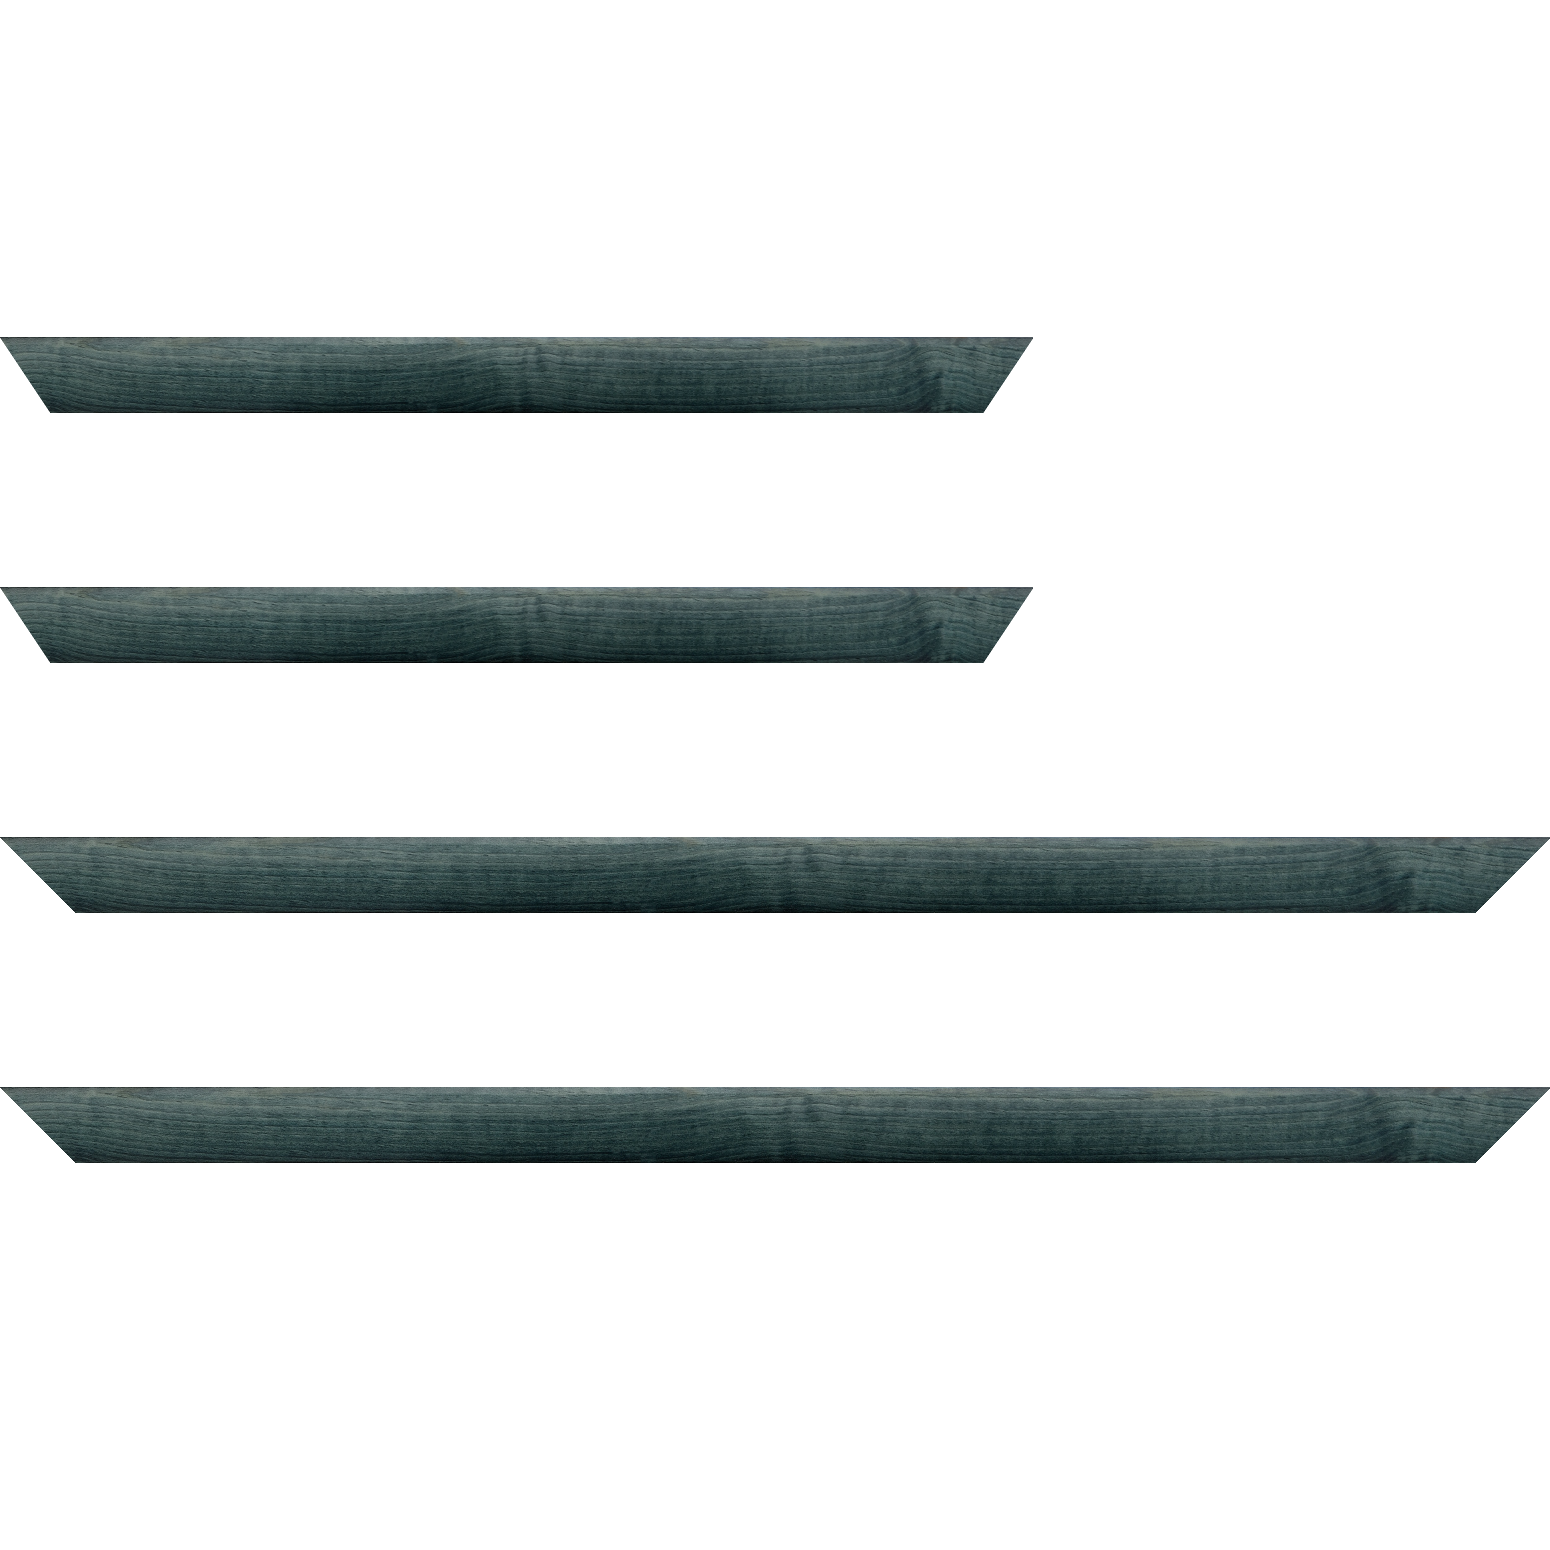 Baguette bois profil arrondi en pente plongeant largeur 2.4cm couleur bleu turquoise foncé finition vernis brillant,veine du bois  apparent (pin) , - 92x60